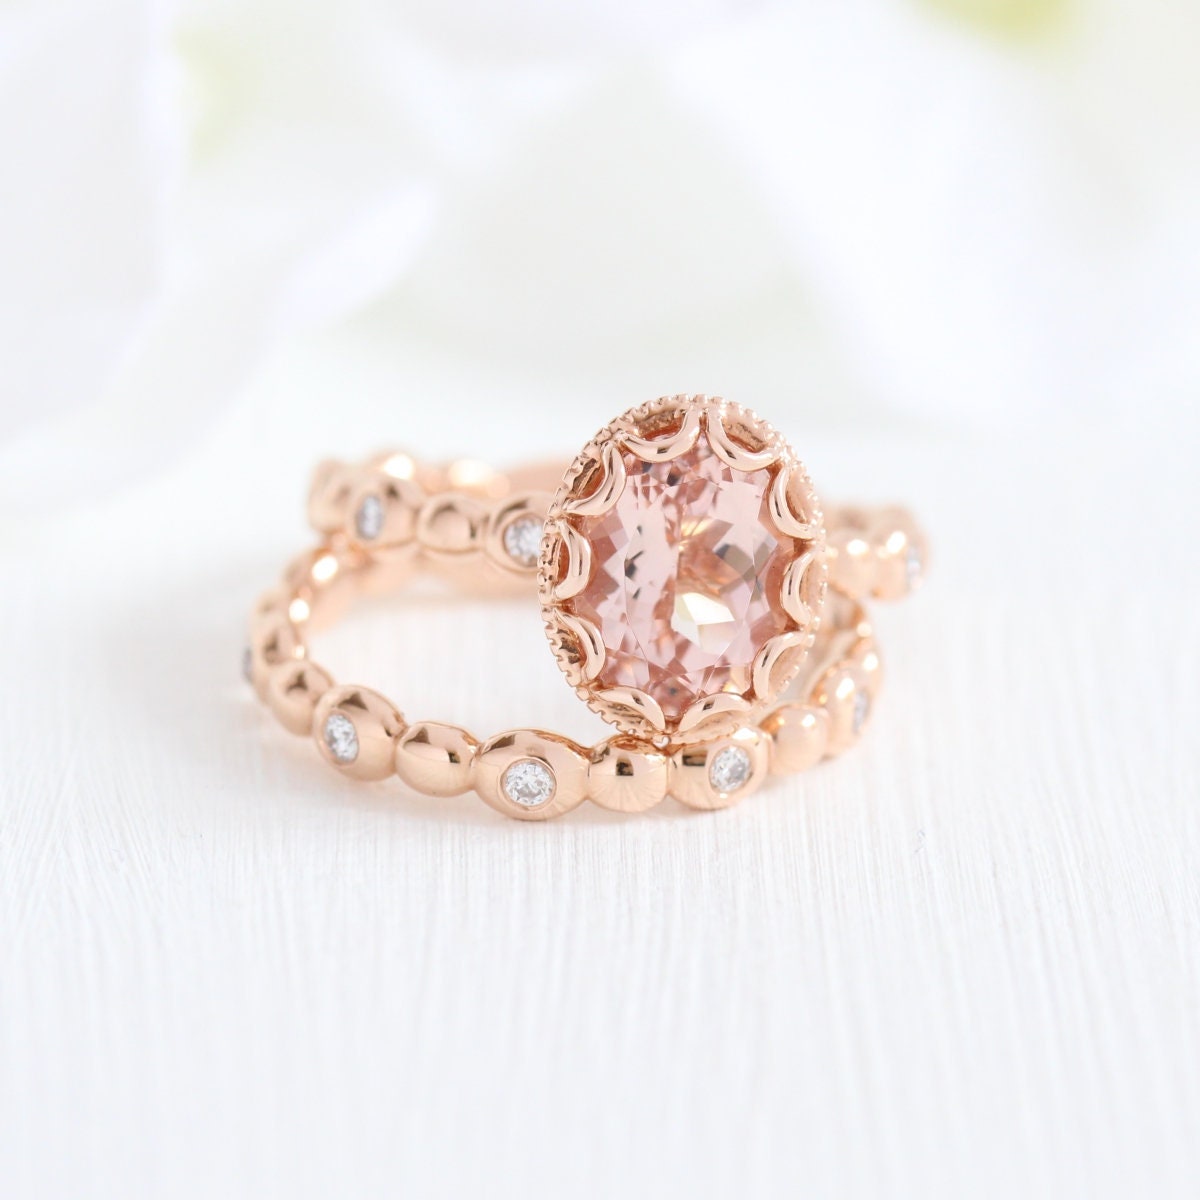 Oval Morganite Engagement Ring Bridal Set in 14k Rose Gold | Etsy